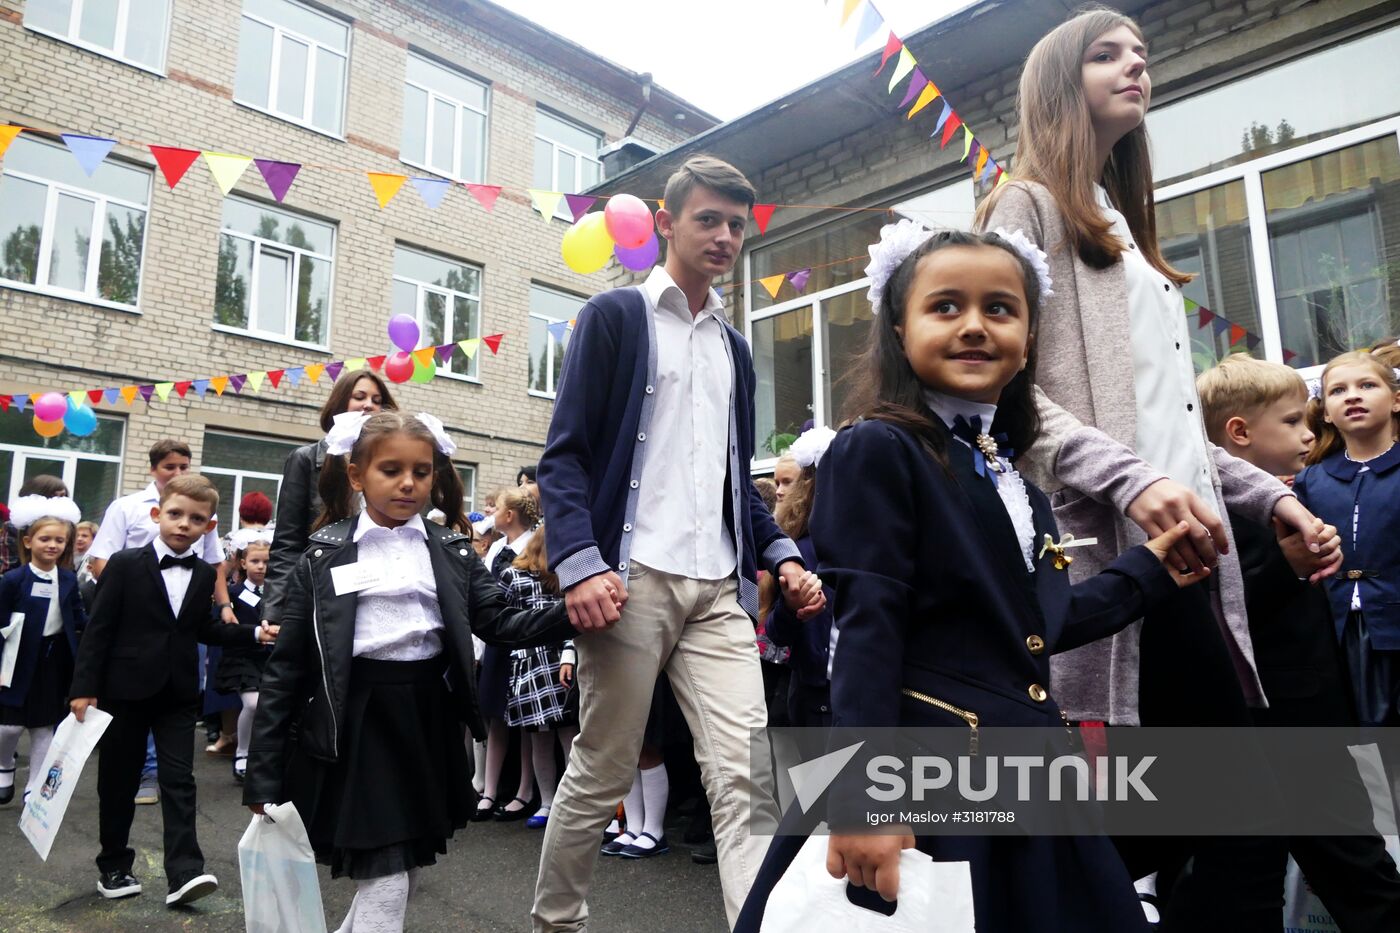 School year starts in Donetsk People's Republic